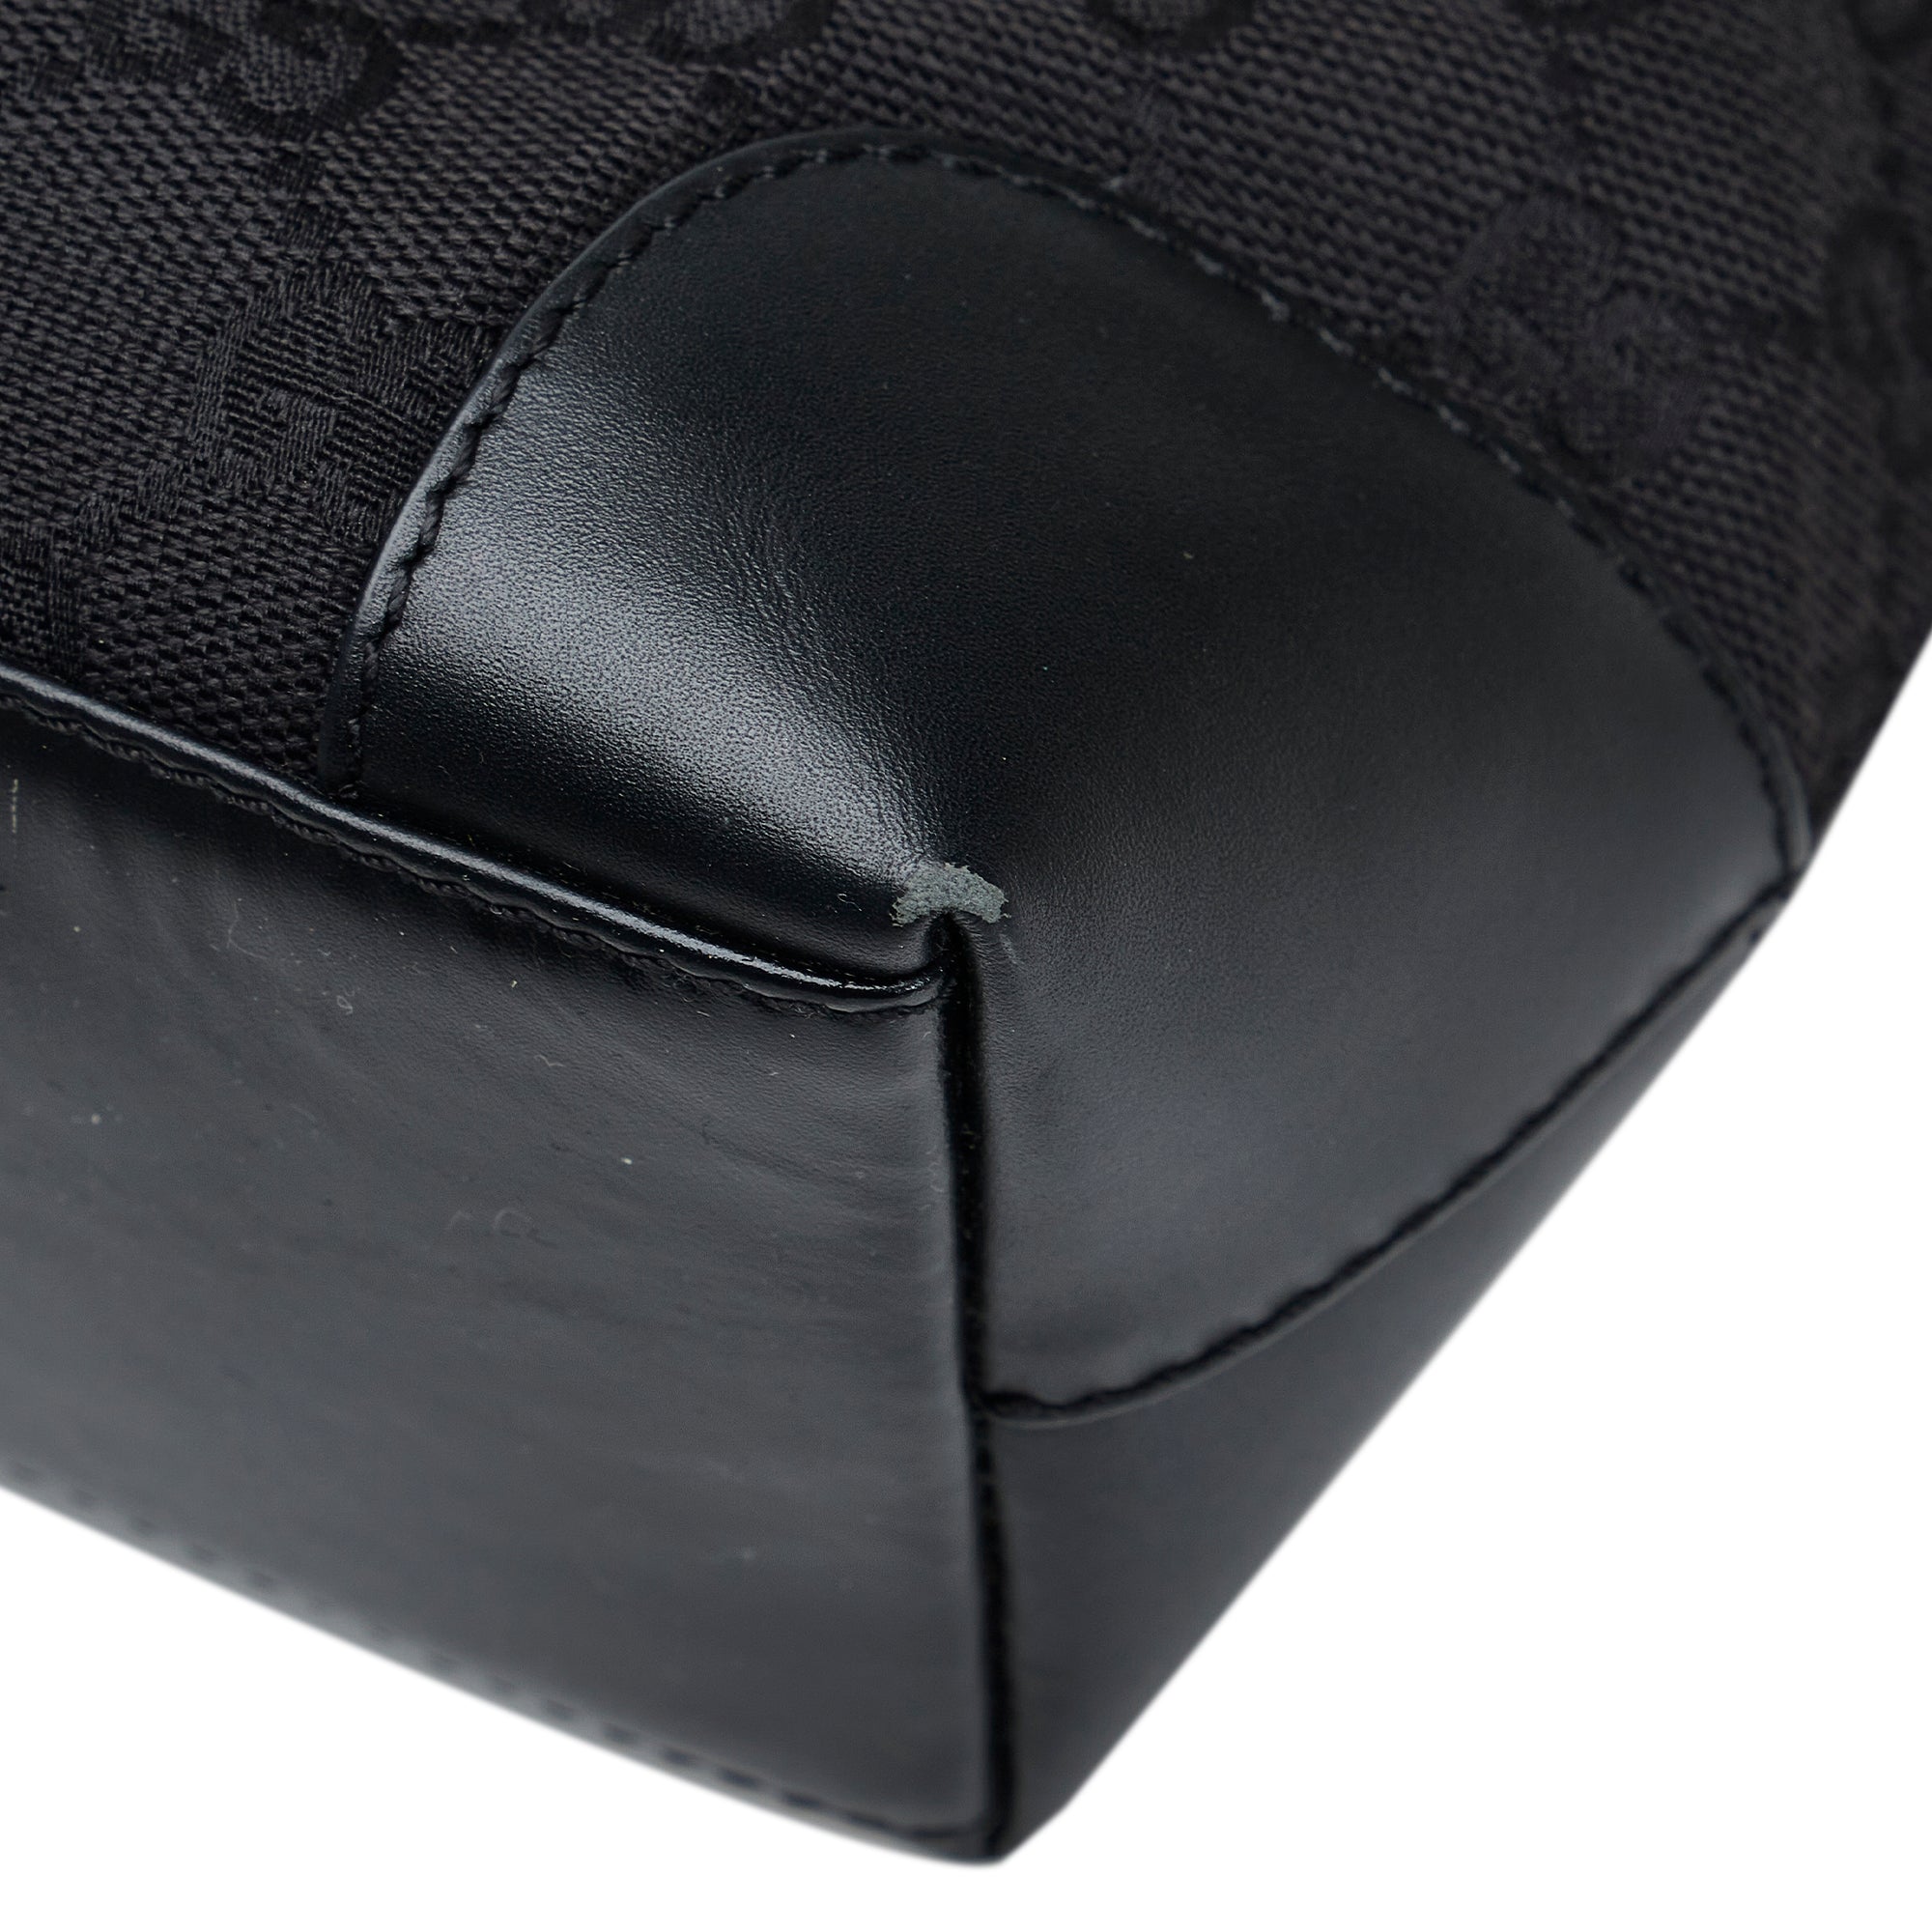 Black Gucci GG Canvas Tote Bag – Designer Revival